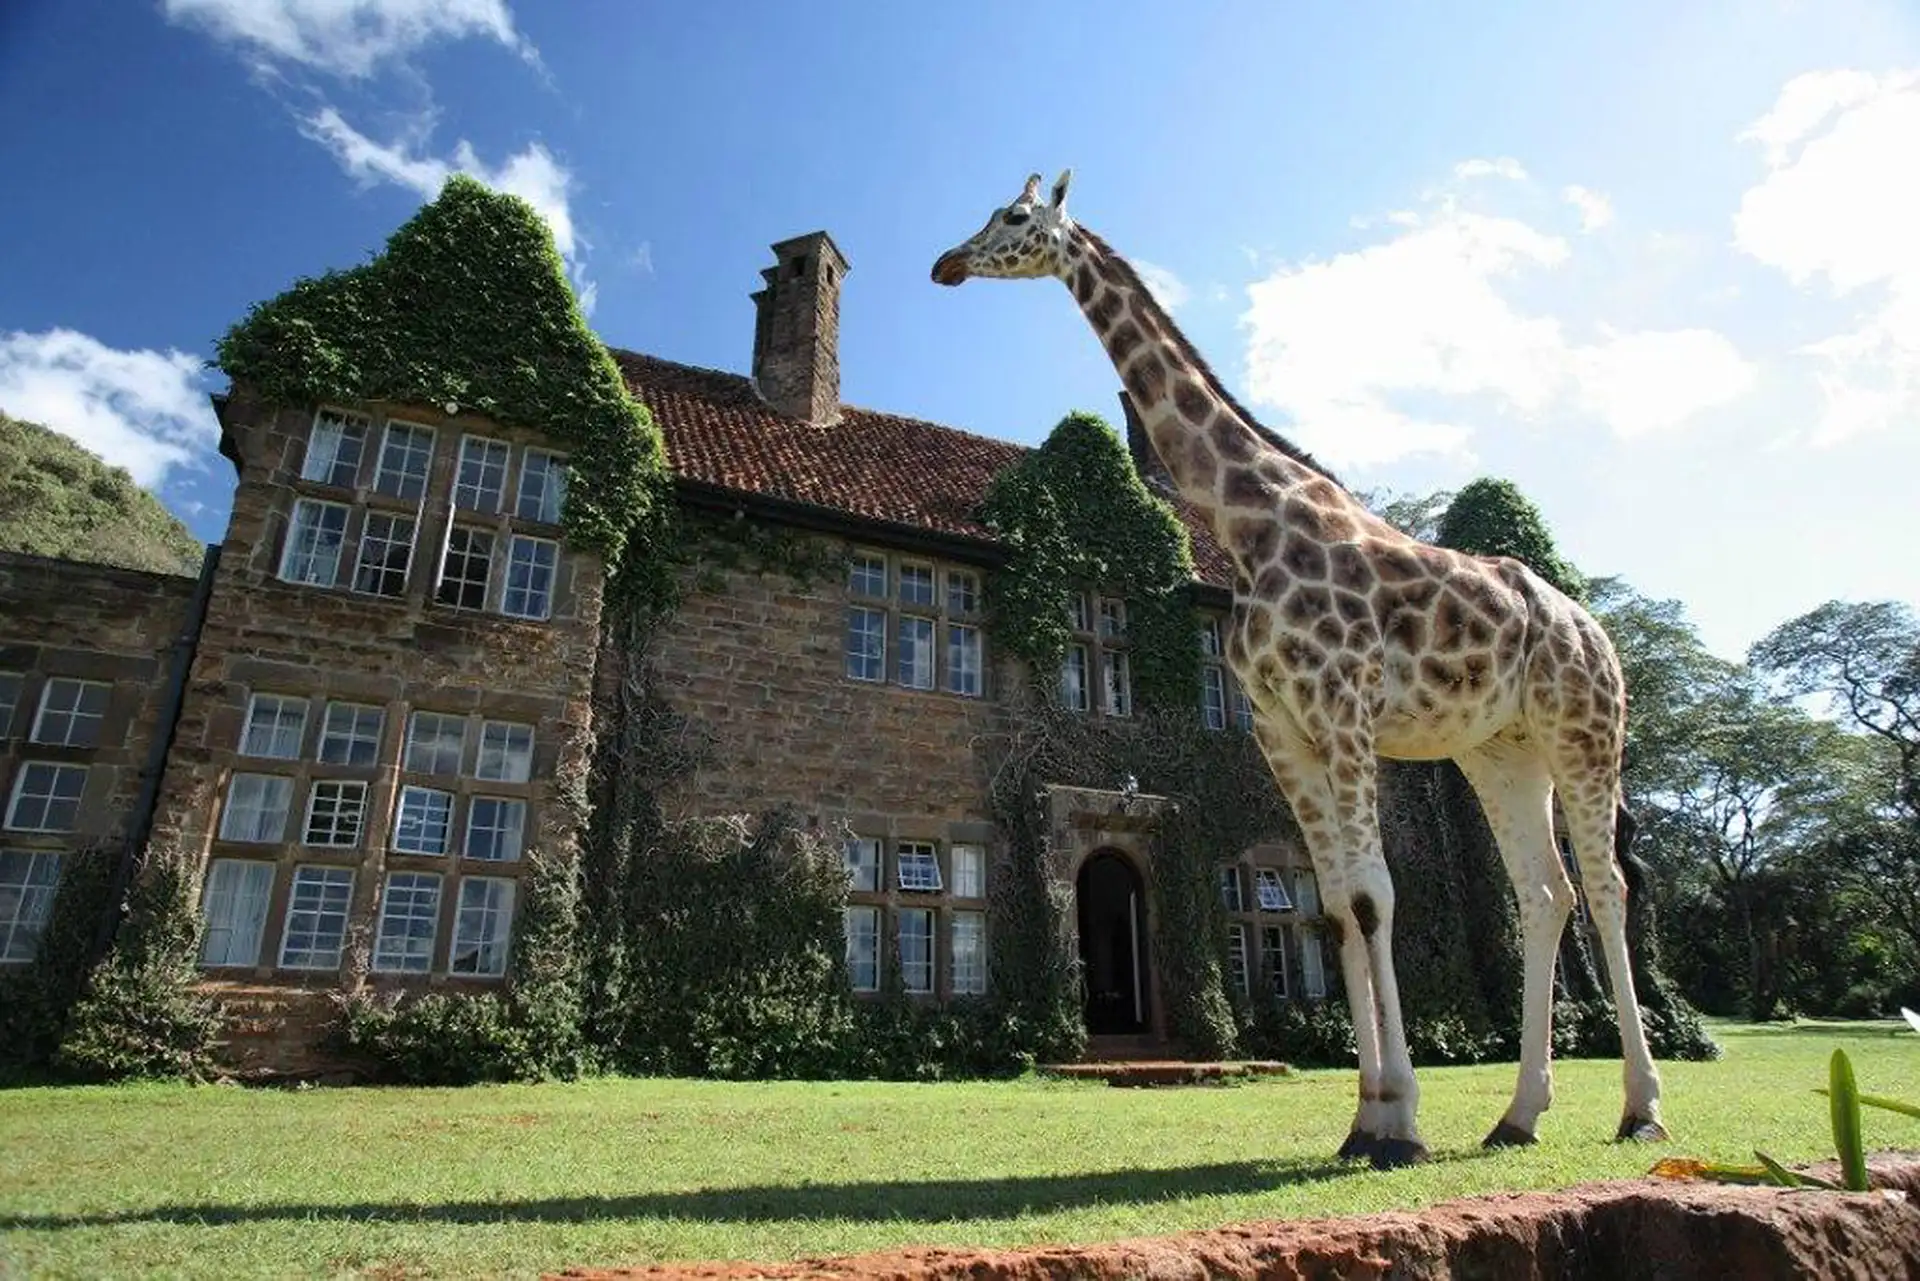 Photo Courtesy of Giraffe Manor